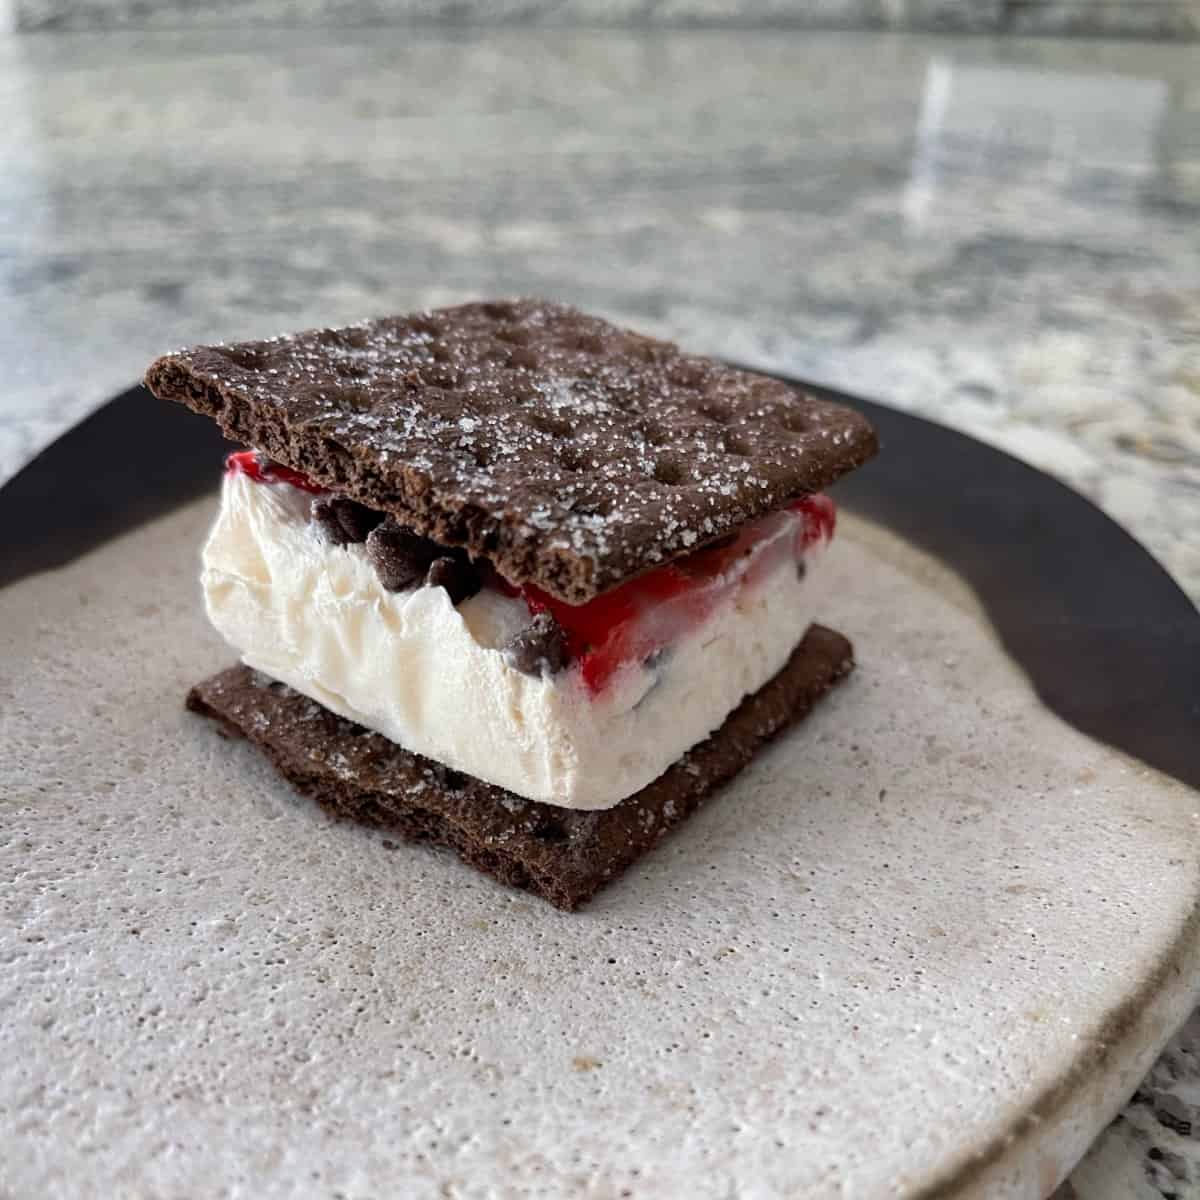 Homemade ice cream sandwich with chocolate graham crackers and strawberry chocolate chip Greek yogurt bark.